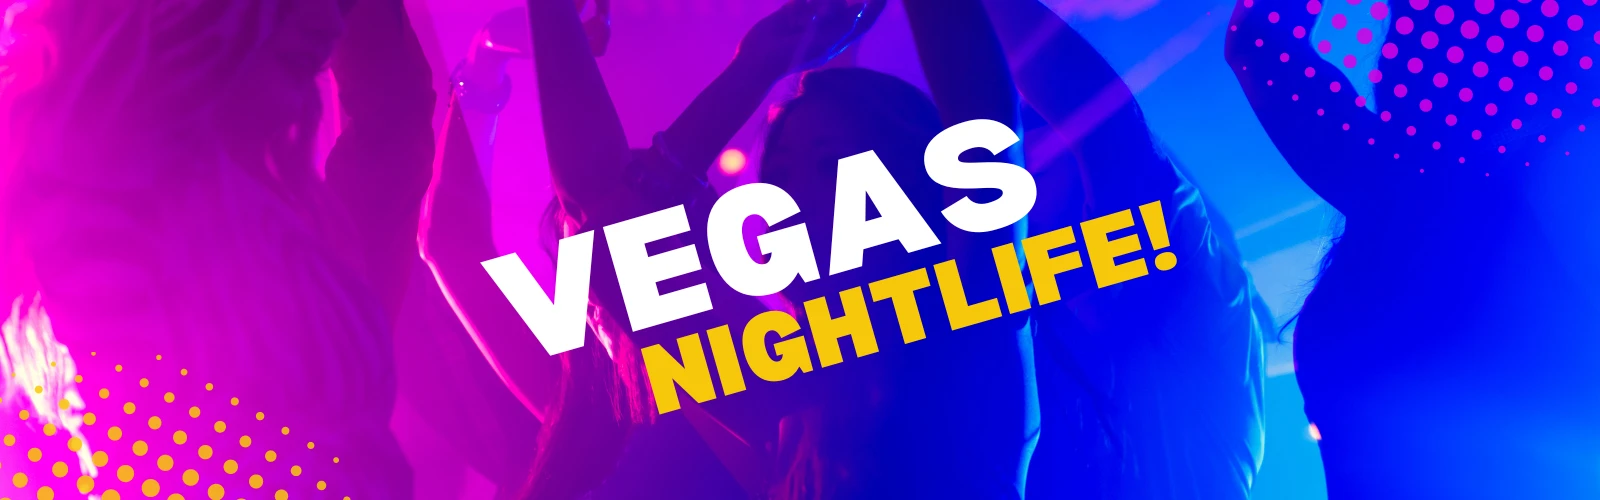 Vegas nightlife